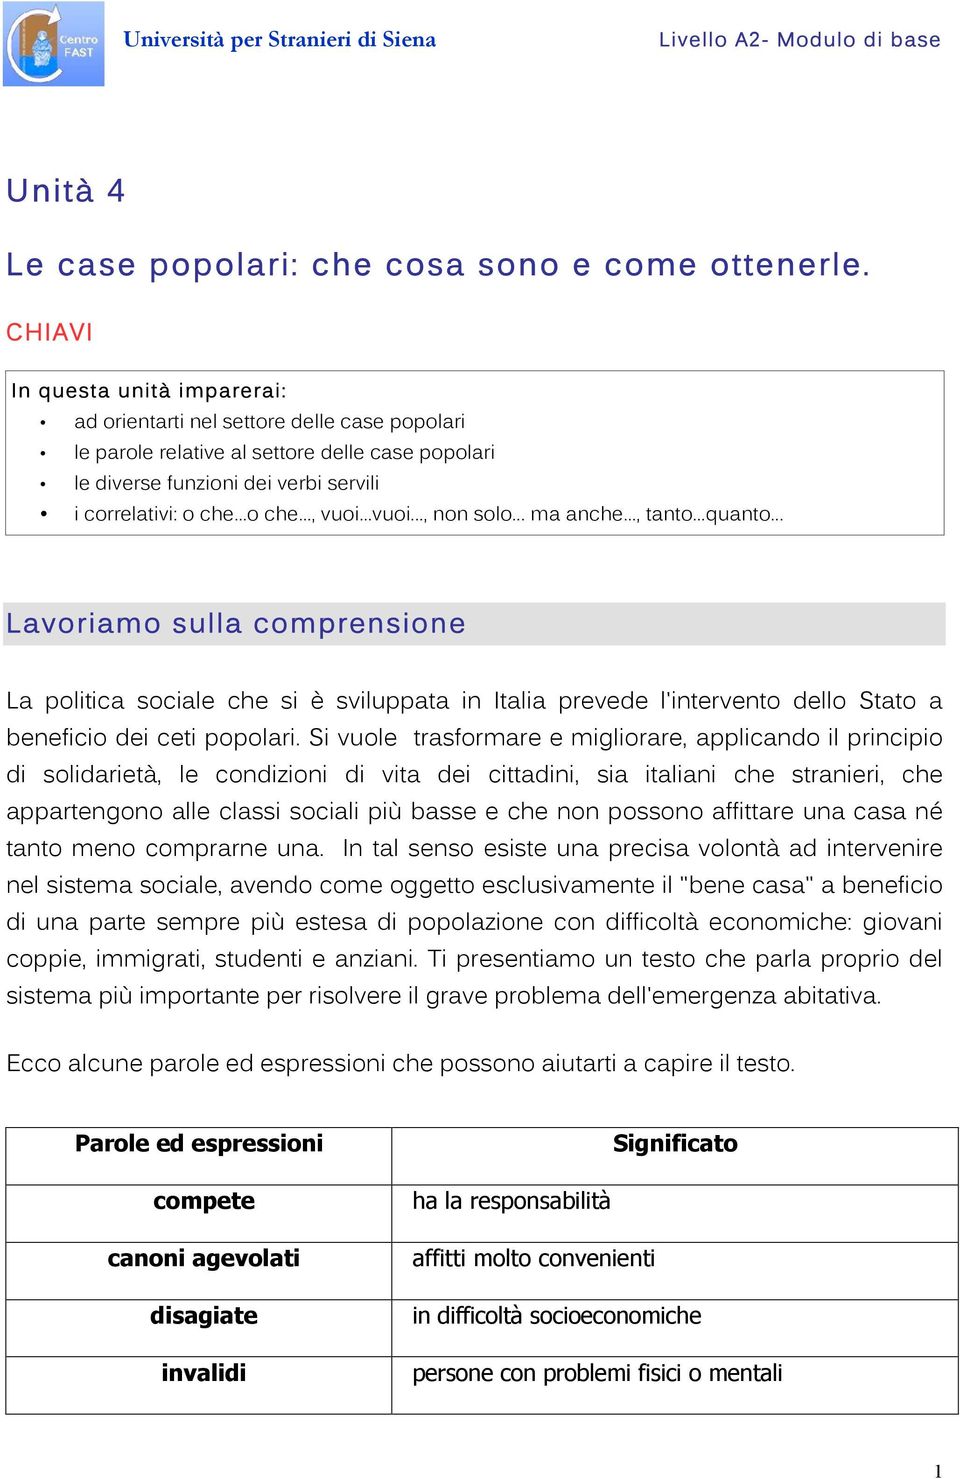 ..vuoi..., non solo... ma anche..., tanto...quanto... Lavoriamo sulla comprensione La politica sociale che si è sviluppata in Italia prevede l'intervento dello Stato a beneficio dei ceti popolari.